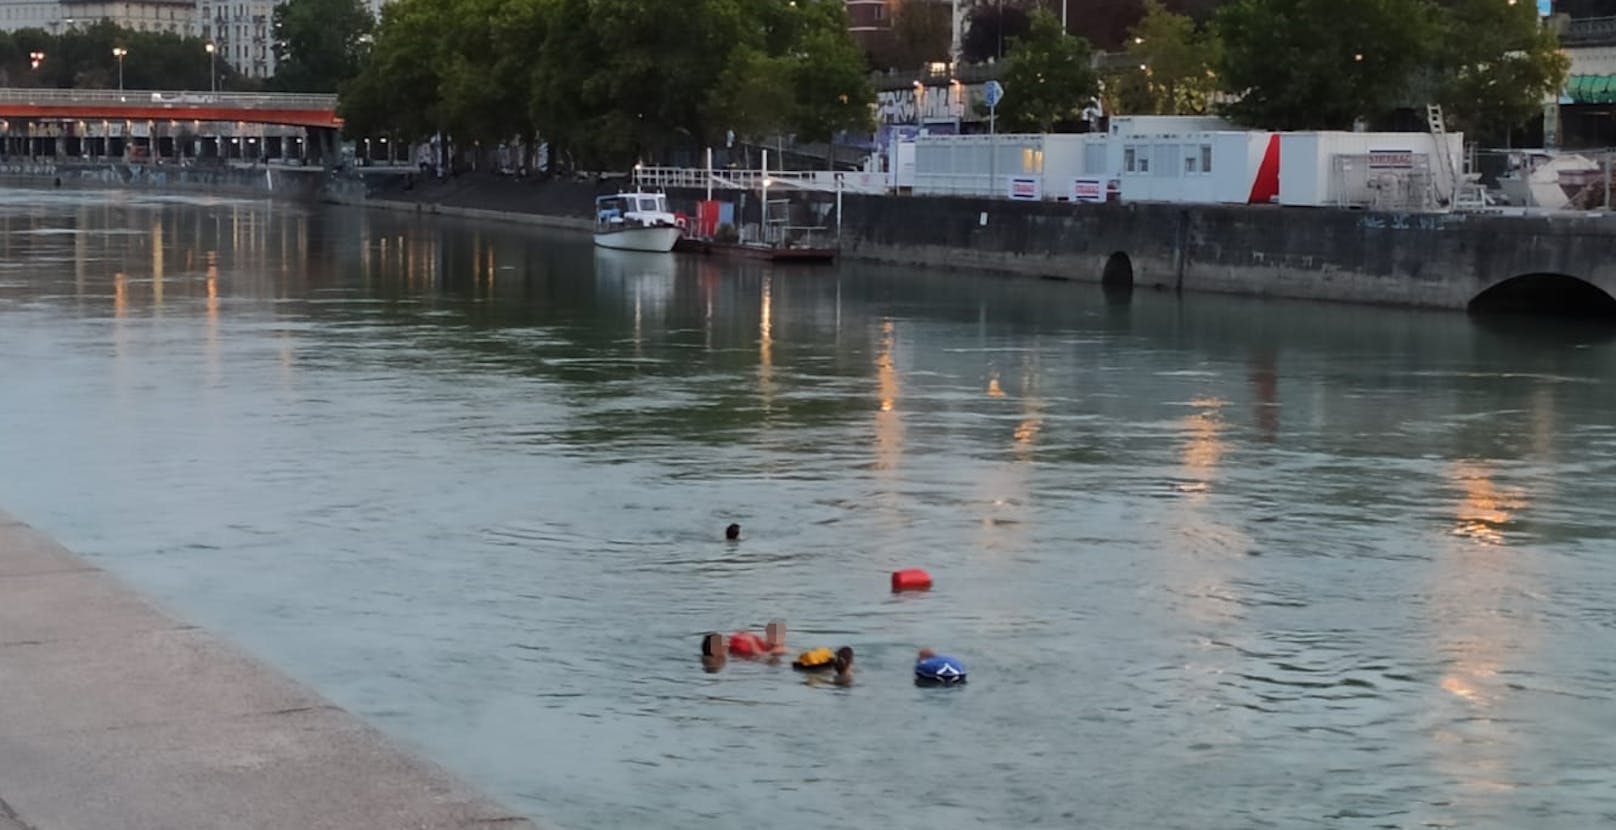 Mehrere Personen sprangen in den Donaukanal und ließen sich treiben.